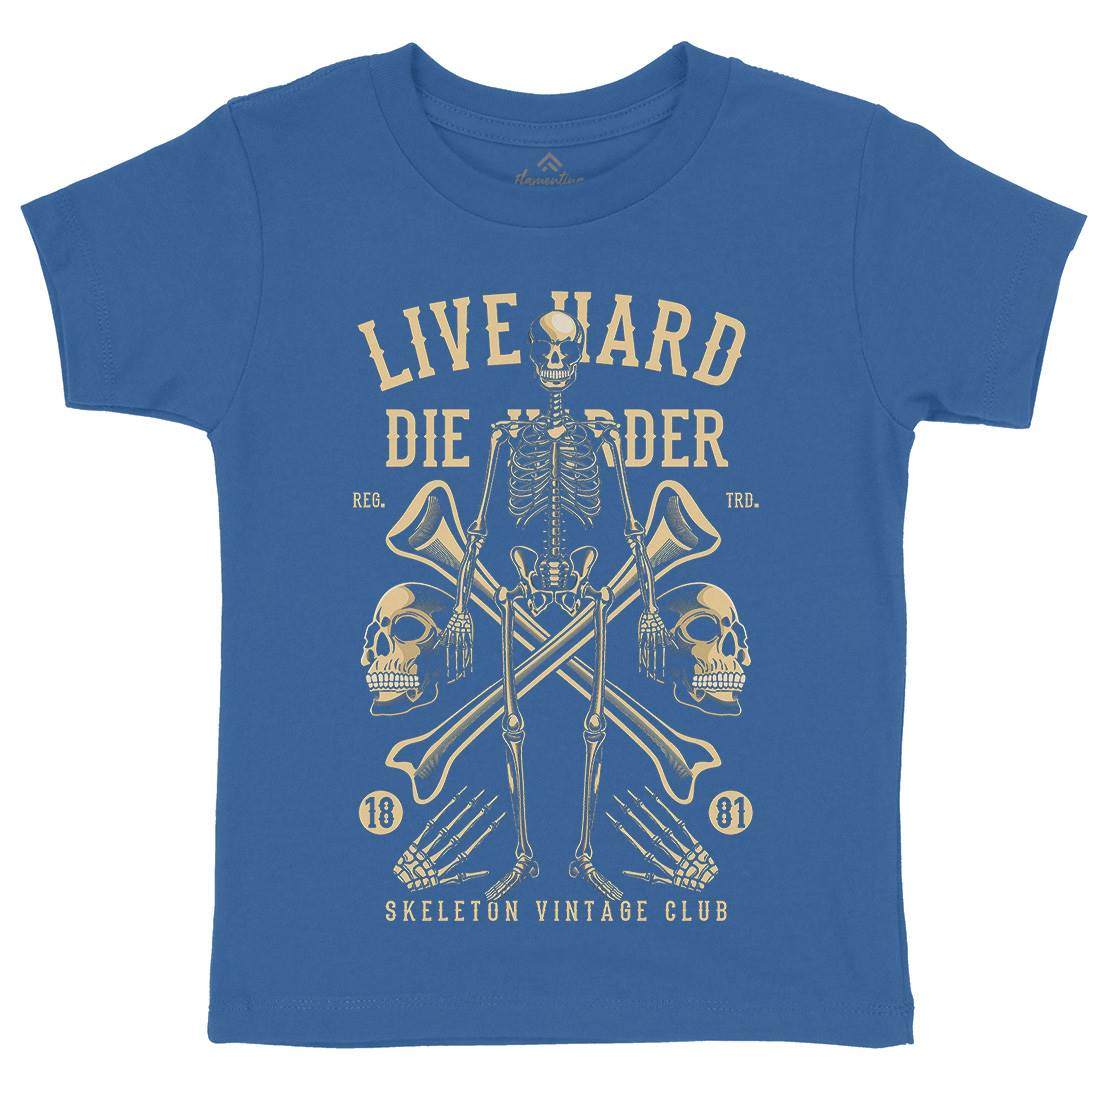 Live Hard Die Harder Kids Crew Neck T-Shirt Retro C387